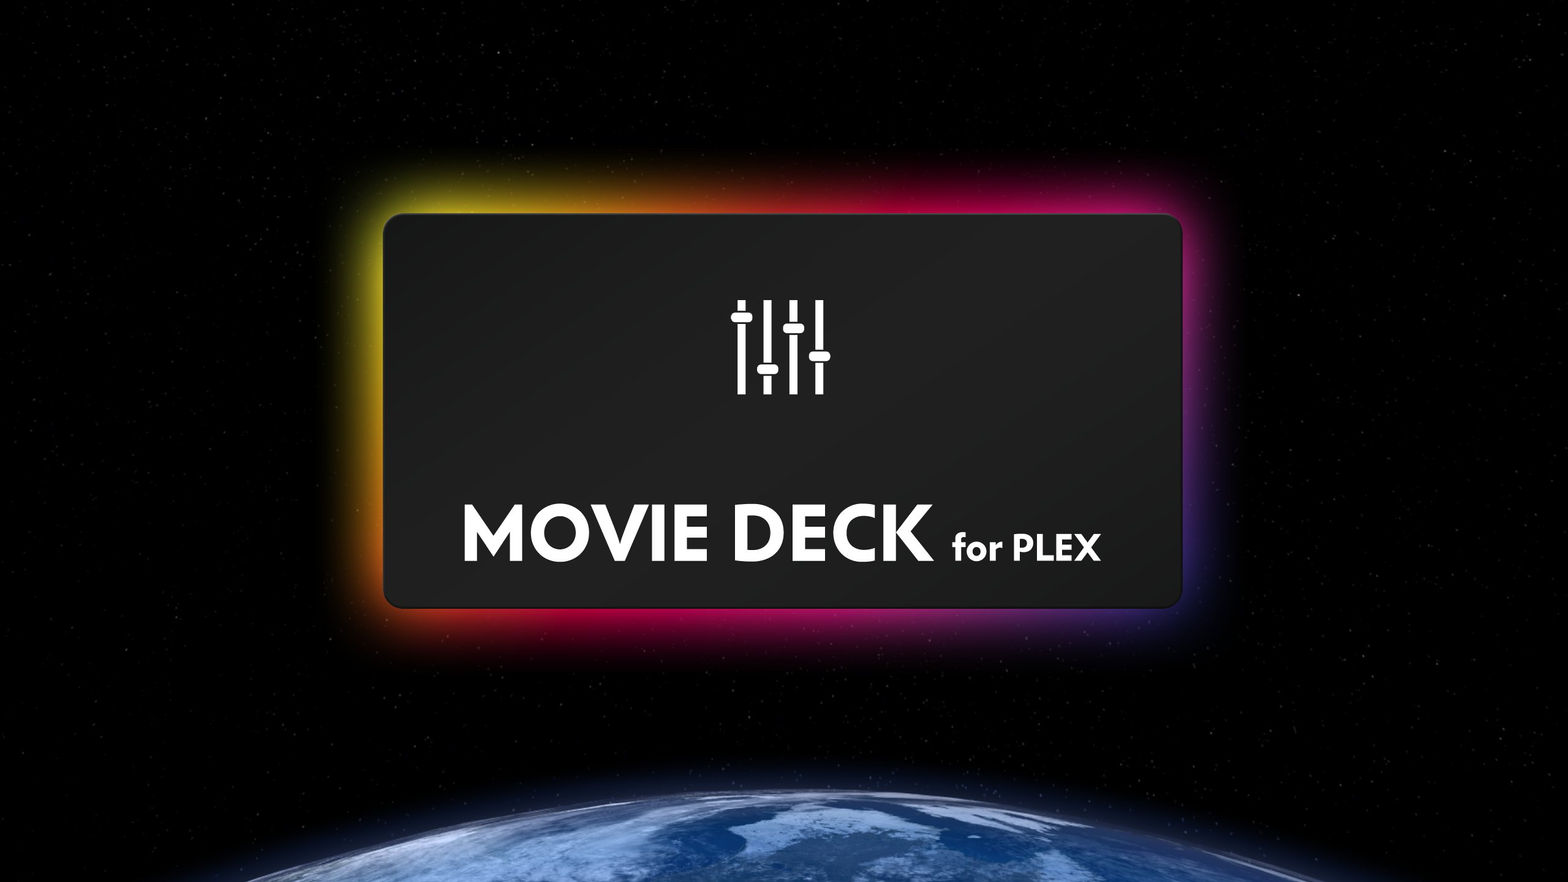 Movie Deck for Plex